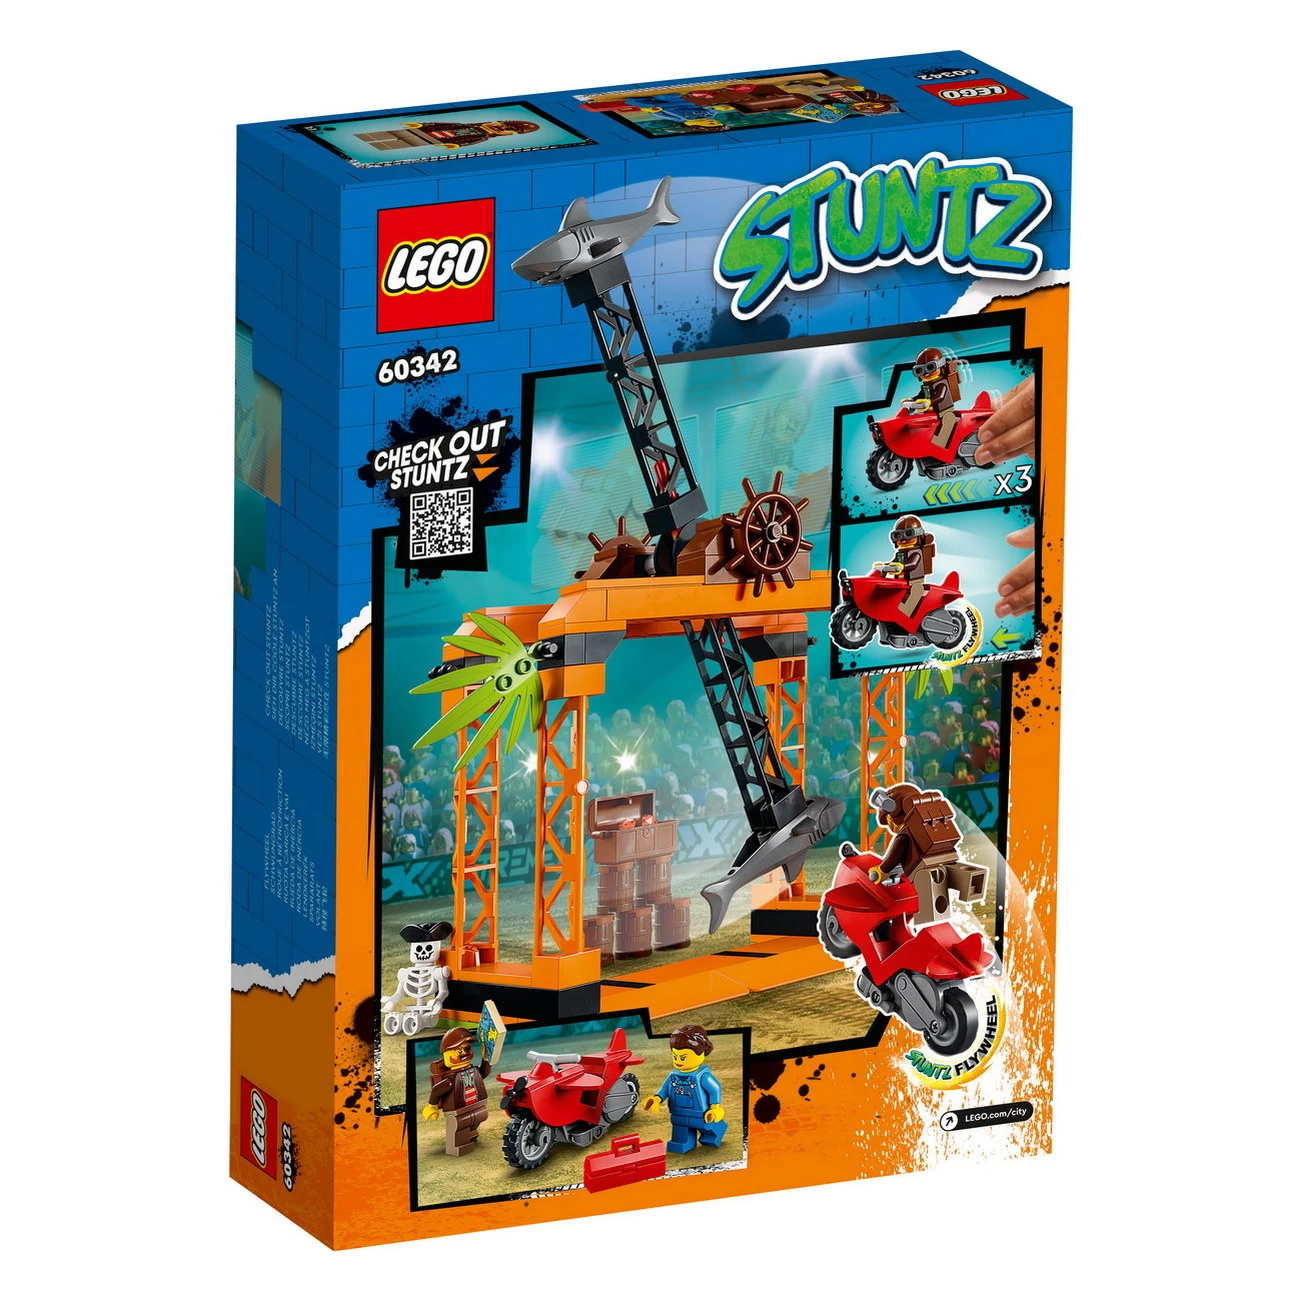 LEGO City 60342 - Haiangriff-Stuntchallenge